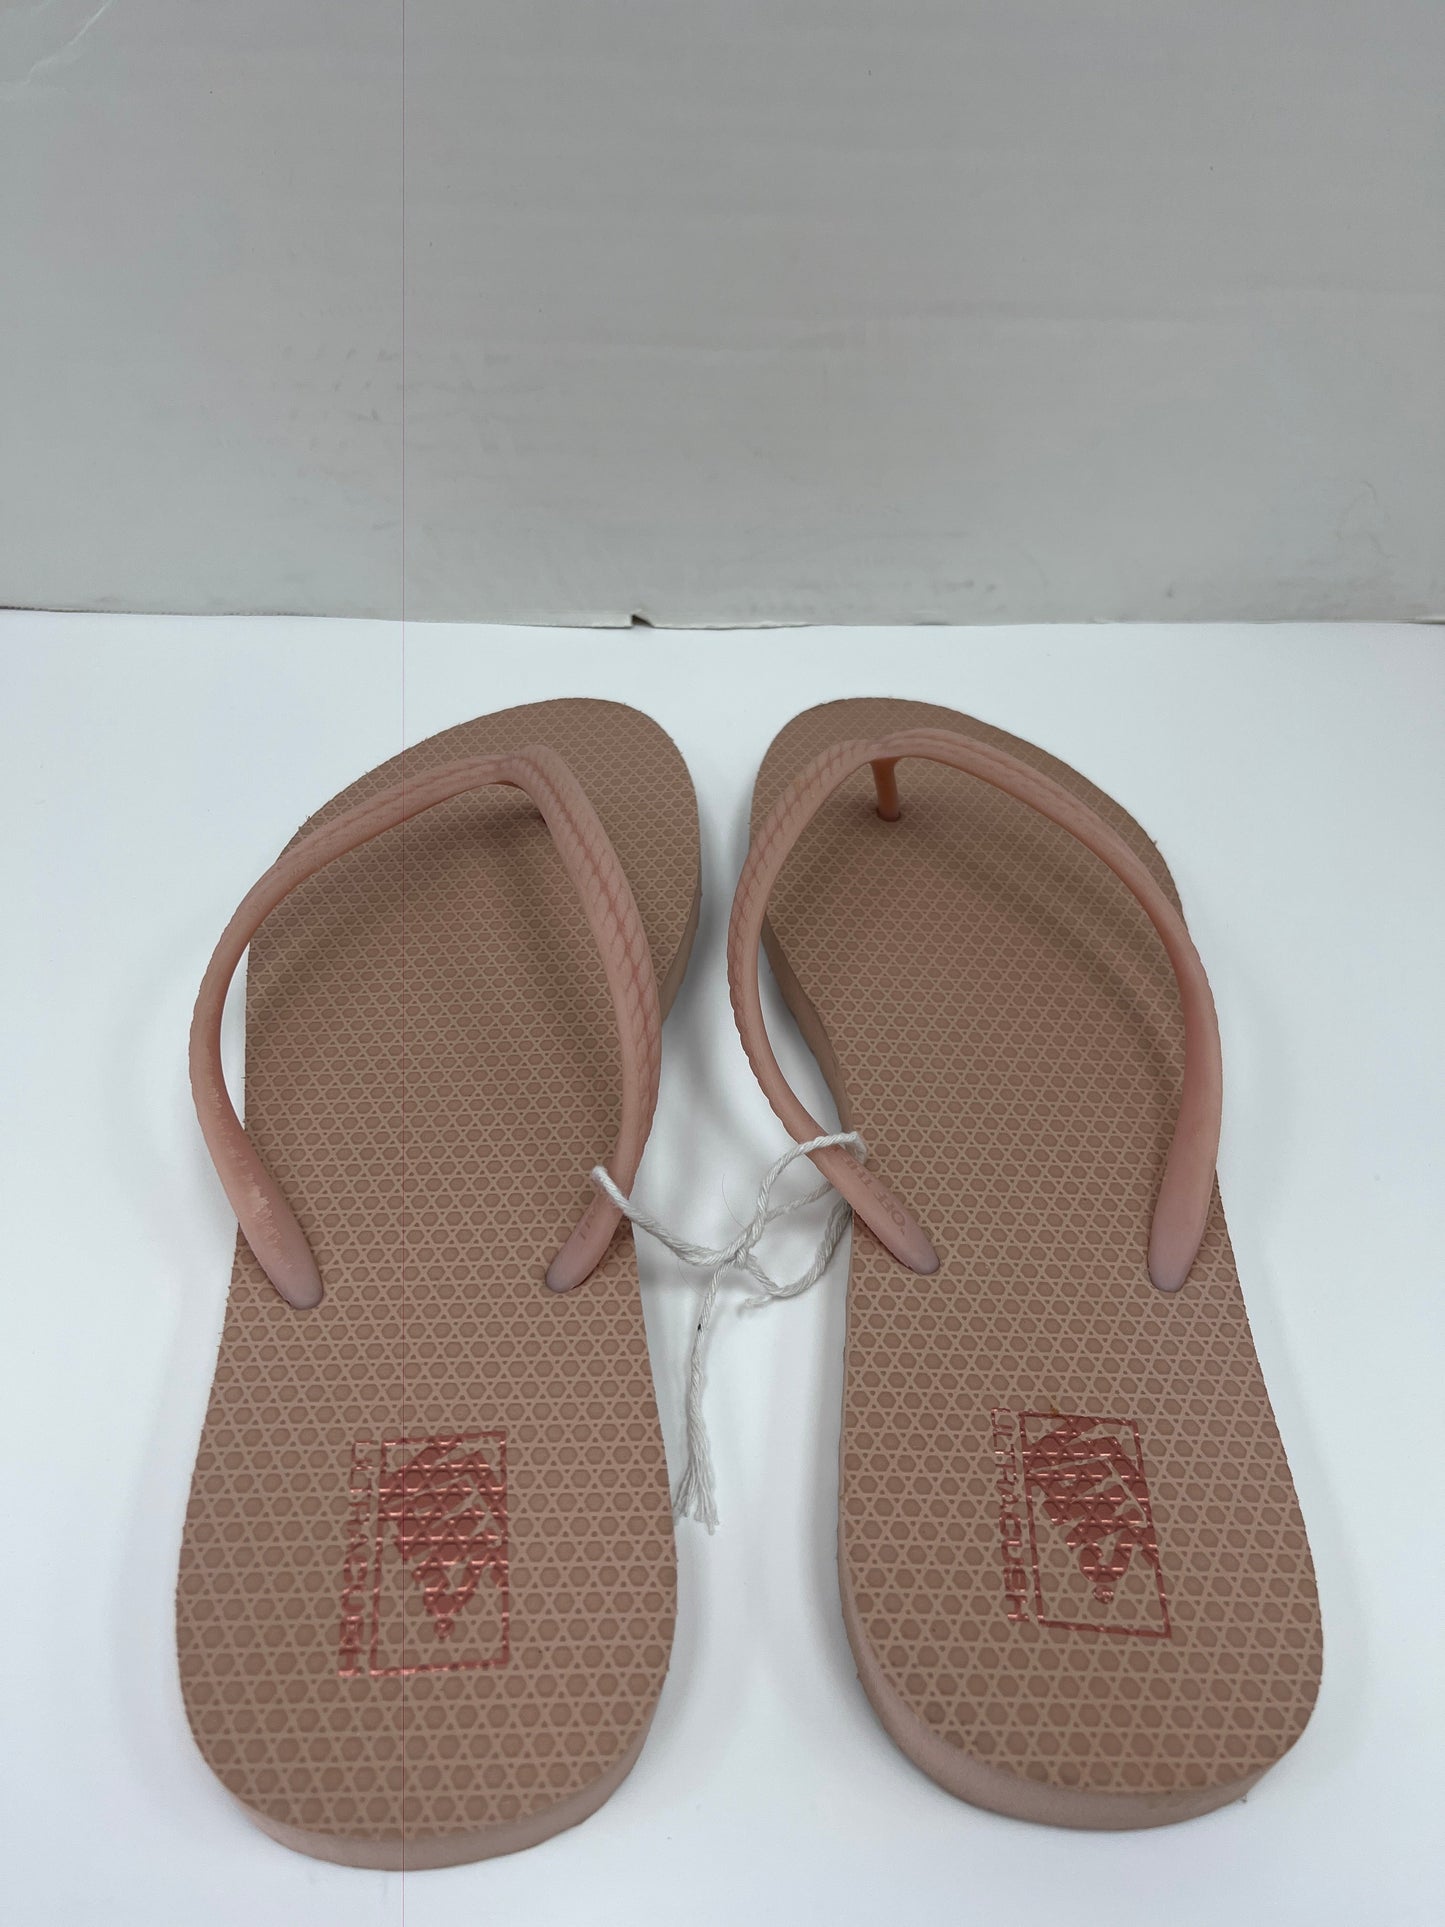 Sandals Flip Flops By Vans  Size: 10